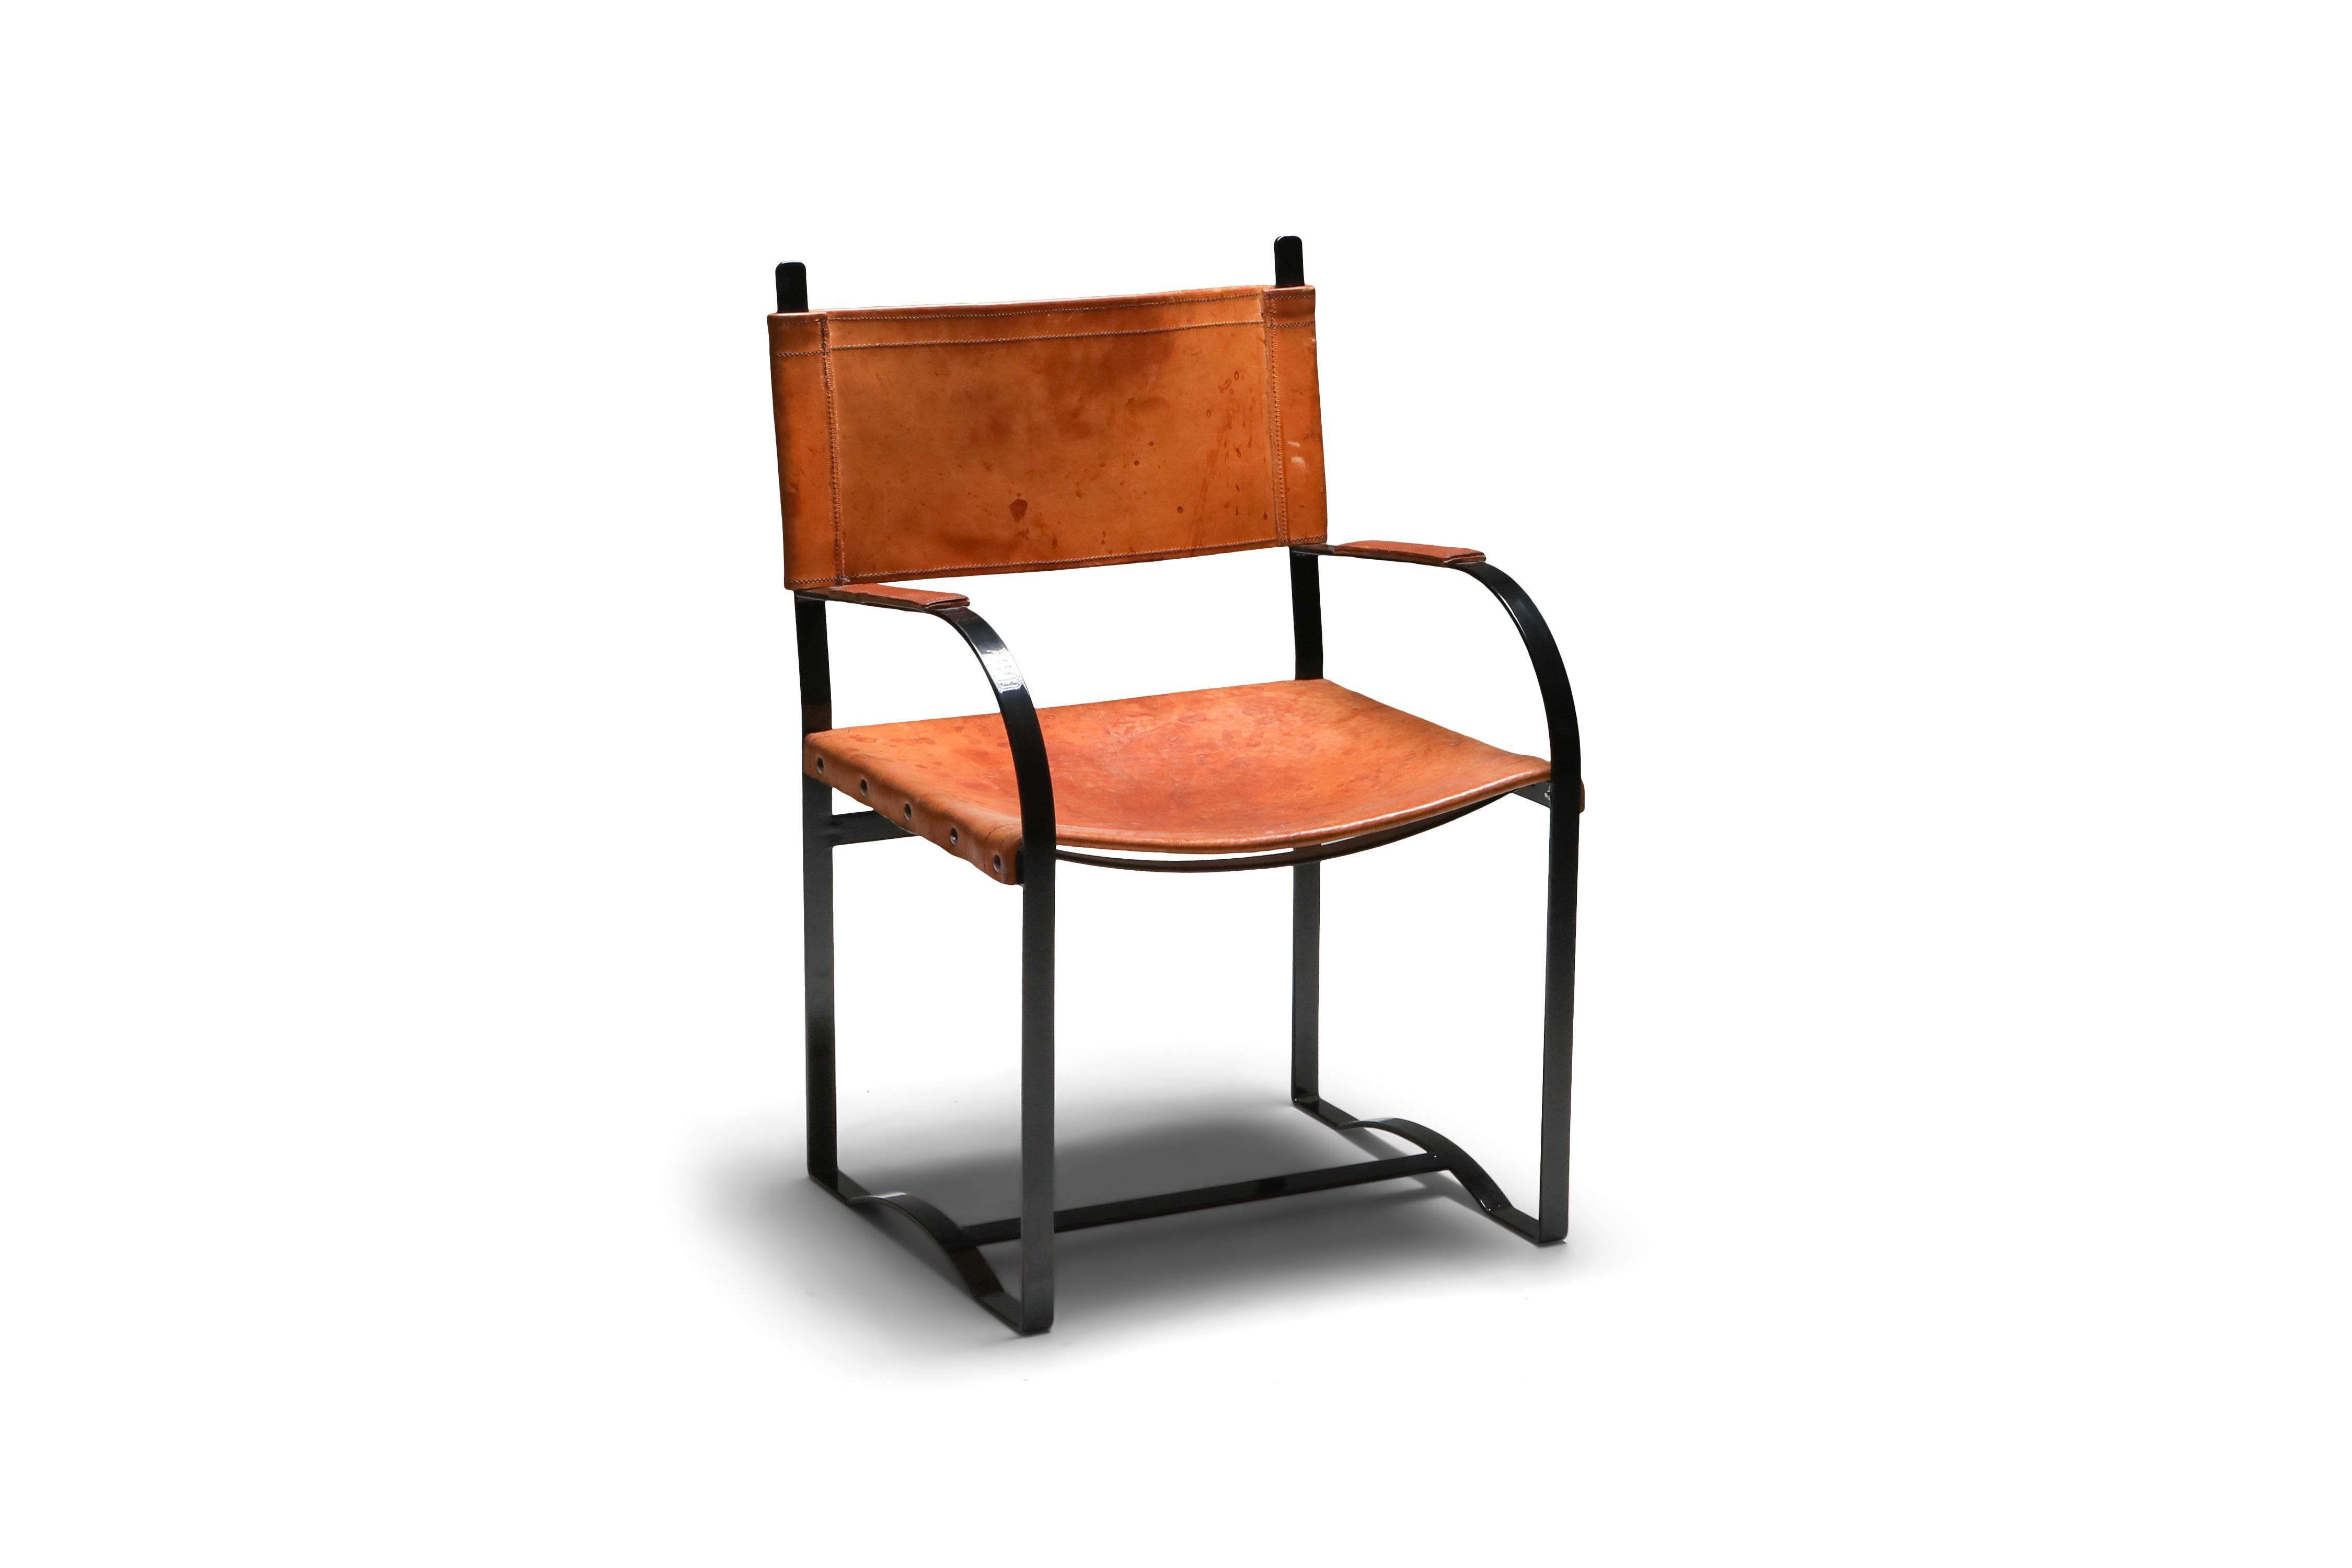 Schwarz lackierter Stahl und patinierte cognacfarbene Lederstühle, Sechser-Set, Belgien, 1960er Jahre

Ungewöhnlicher Satz von sechs Beistellstühlen, Sitzfläche aus dickem Leder, Gestell aus massivem Stahl
Sie würden gut in eine rustikale,